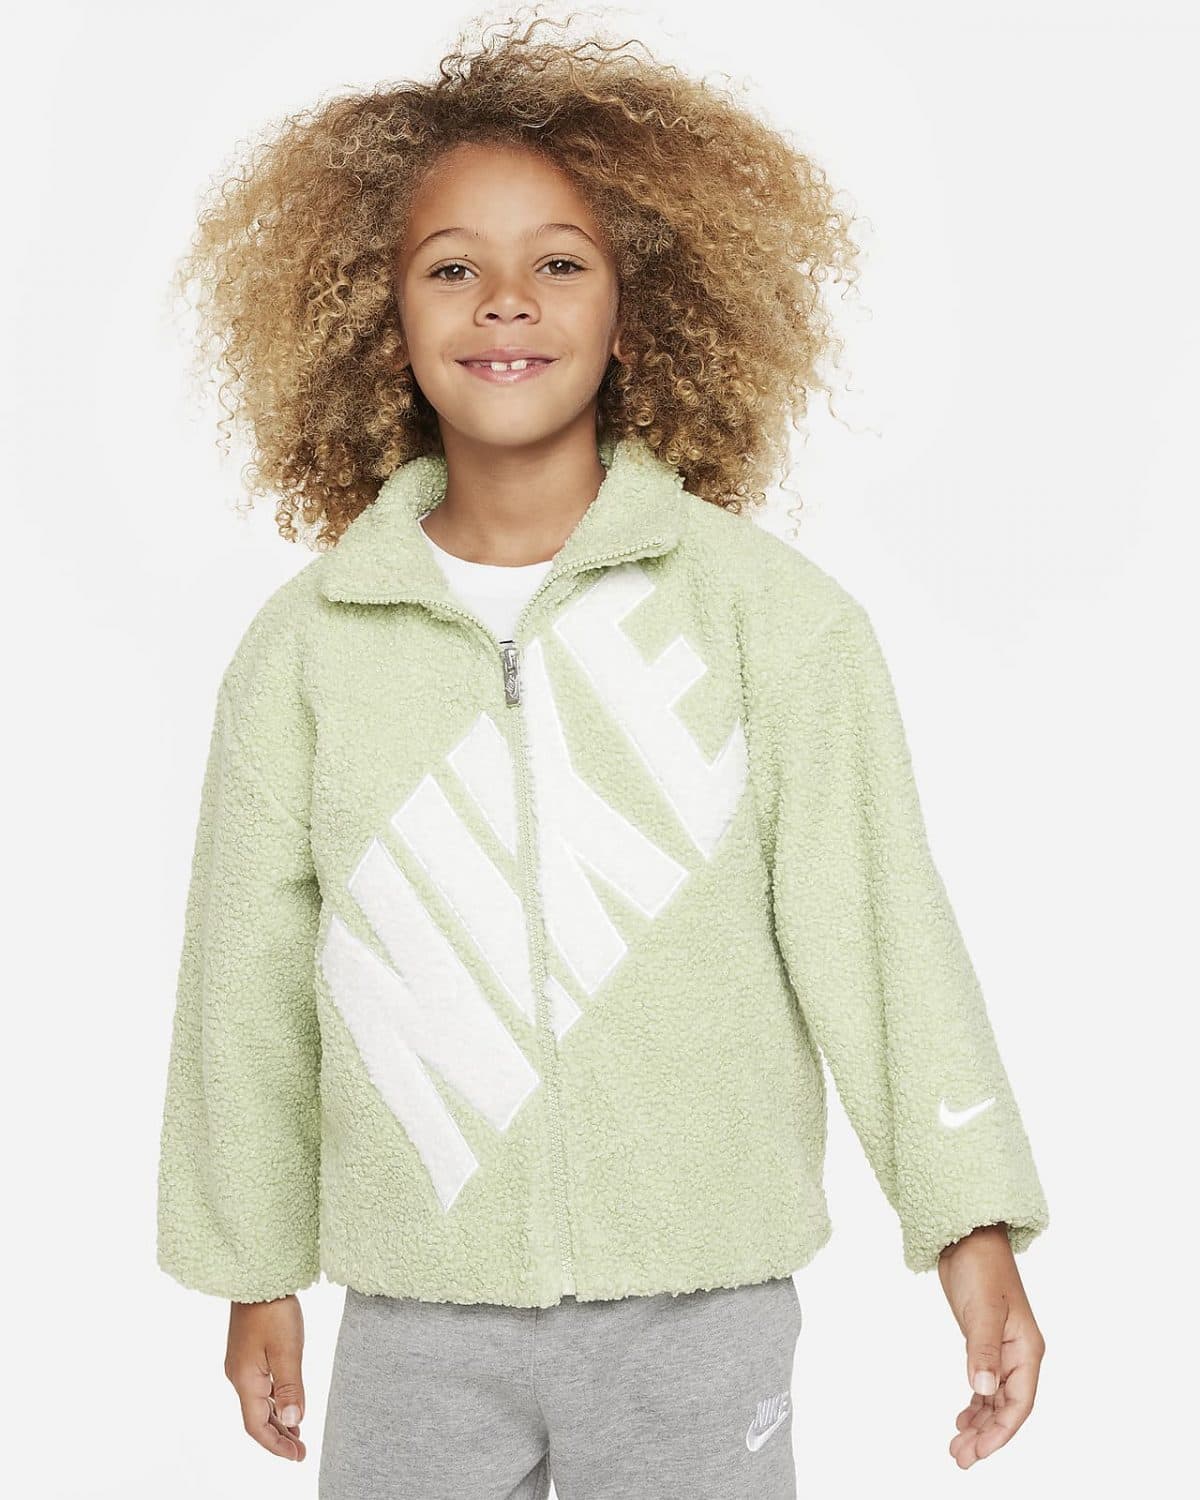 Детская куртка Nike Logo фото